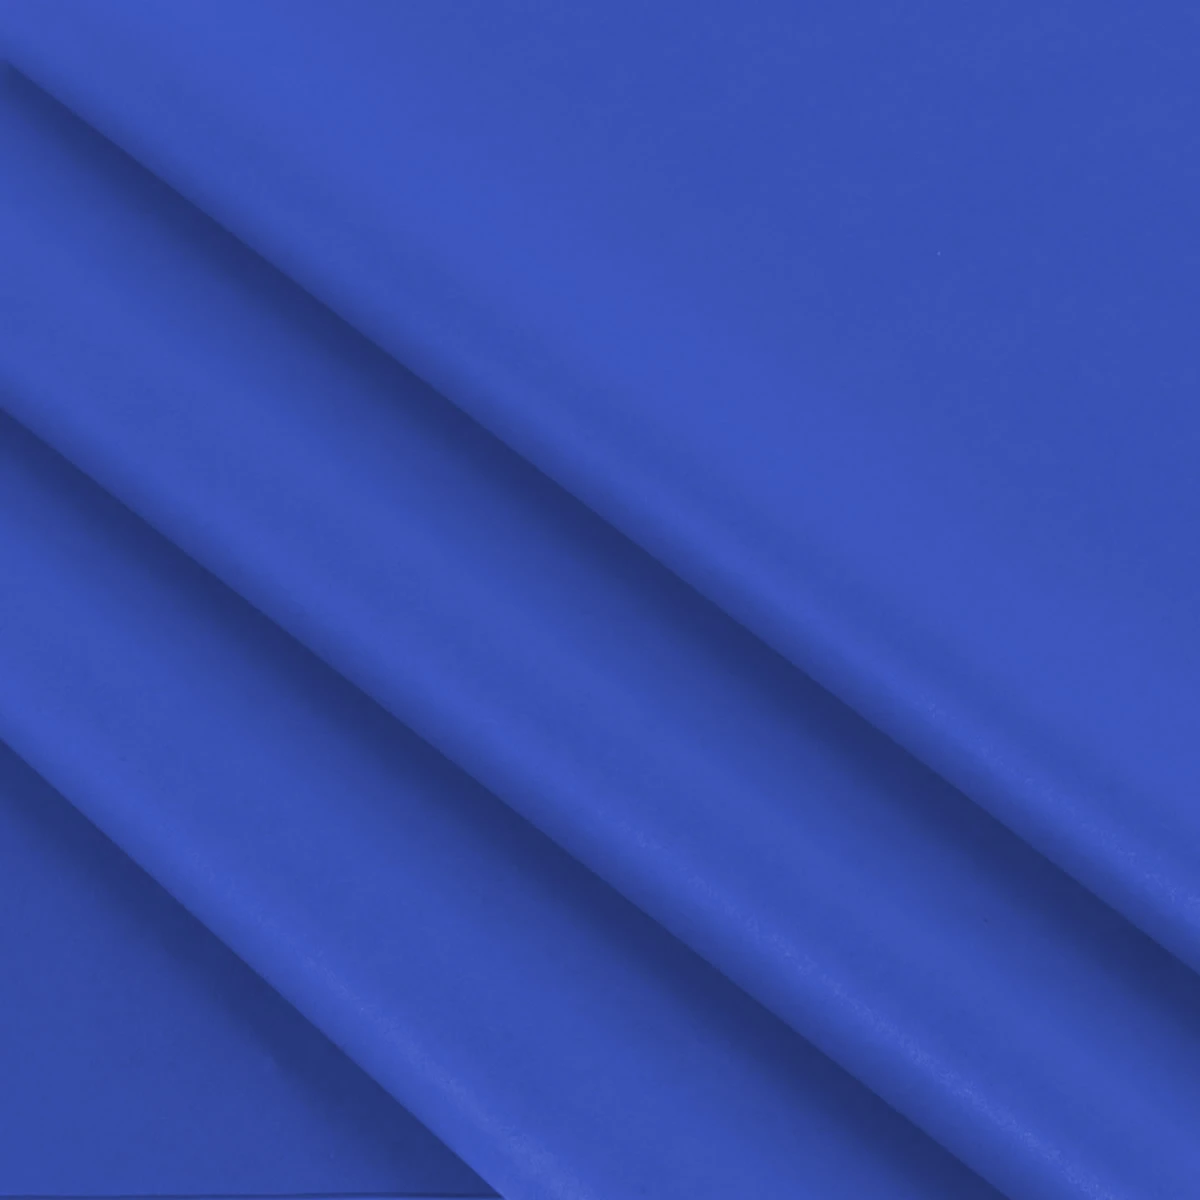 Vloeipapier kobalt blauw 25 x 35 cm (480 vellen)